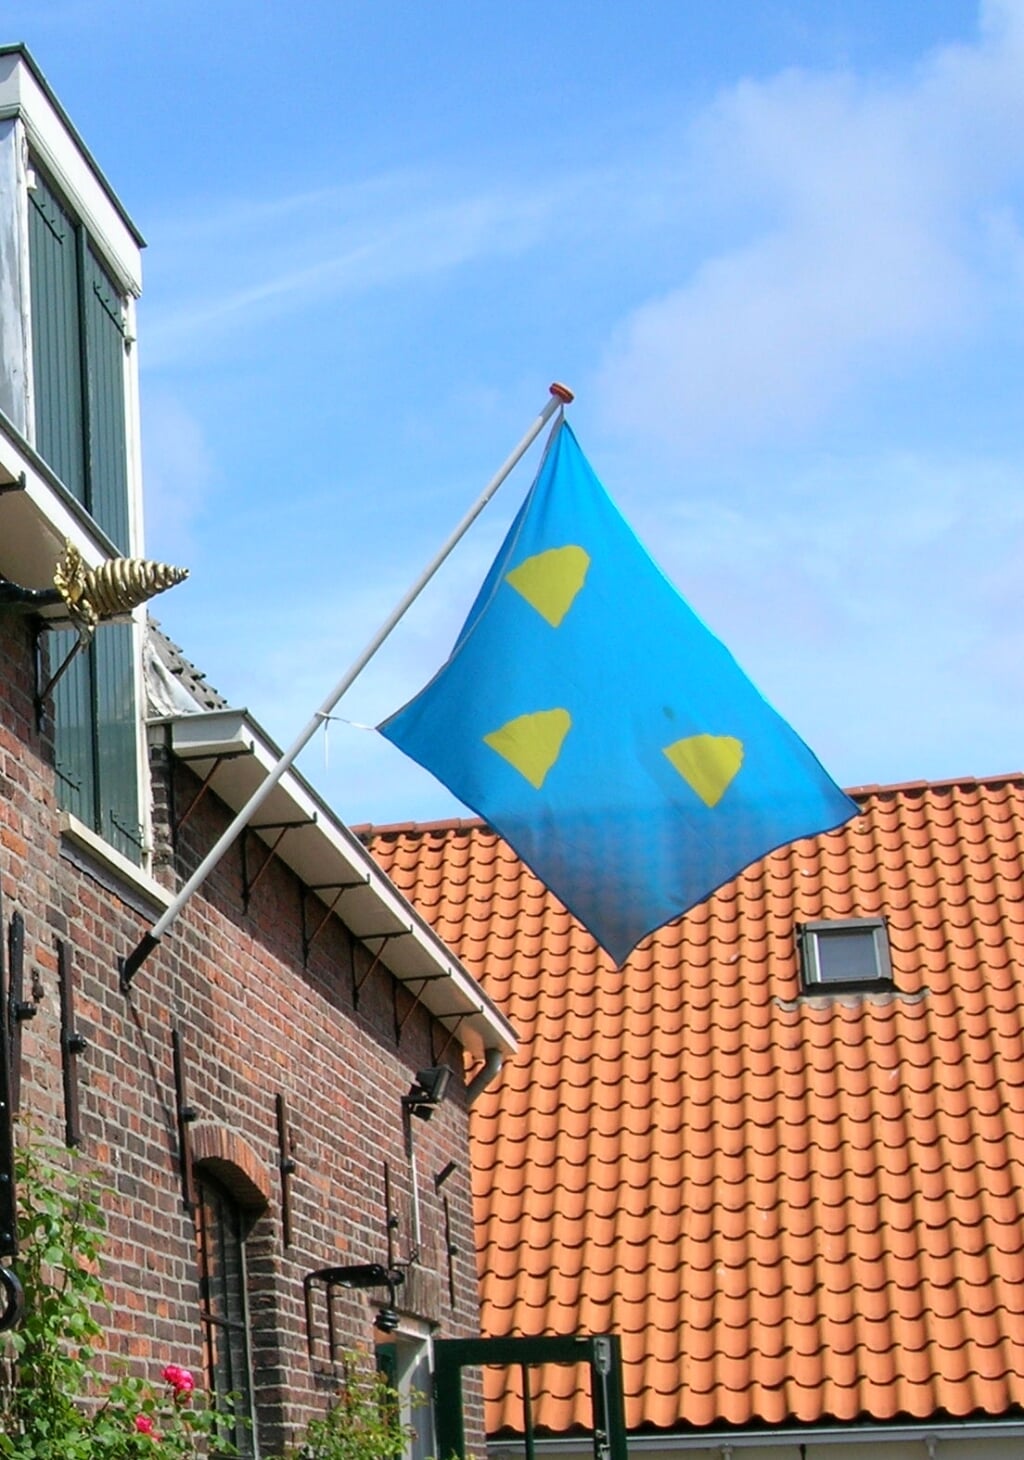 Het wapen van Loosduinen bestaat uit drie gouden duintjes op een azuurblauwe achtergrond.